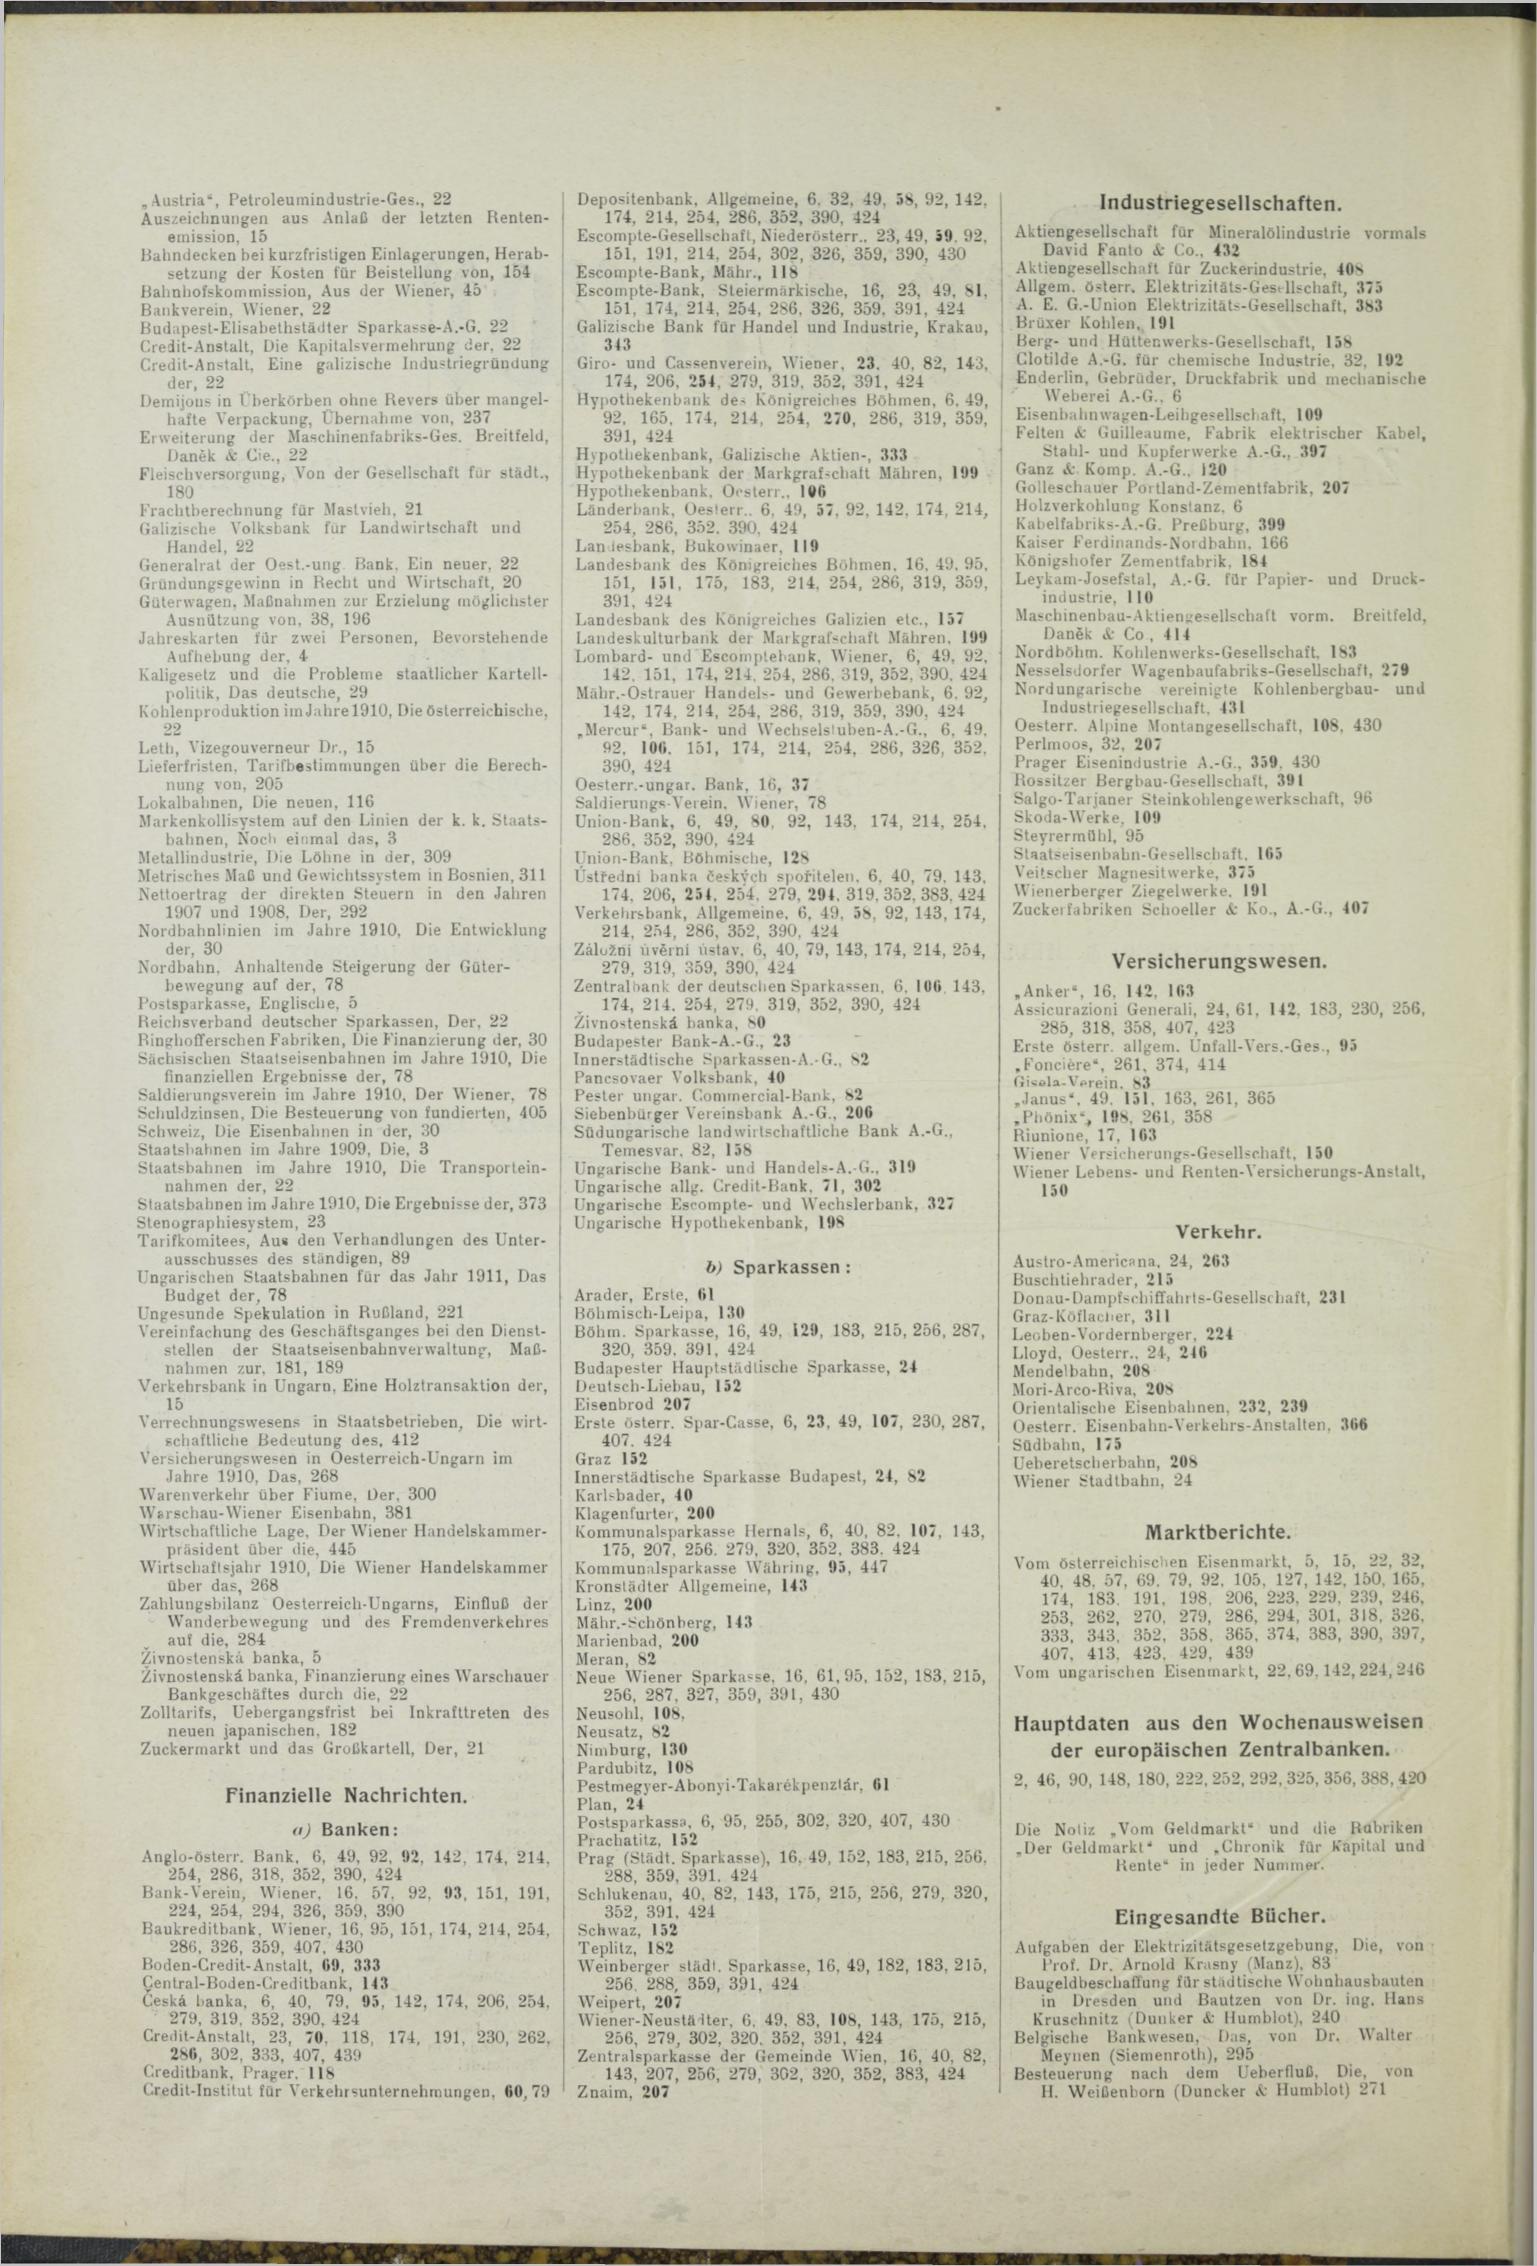 Der Tresor 13.05.1911 - Seite 10